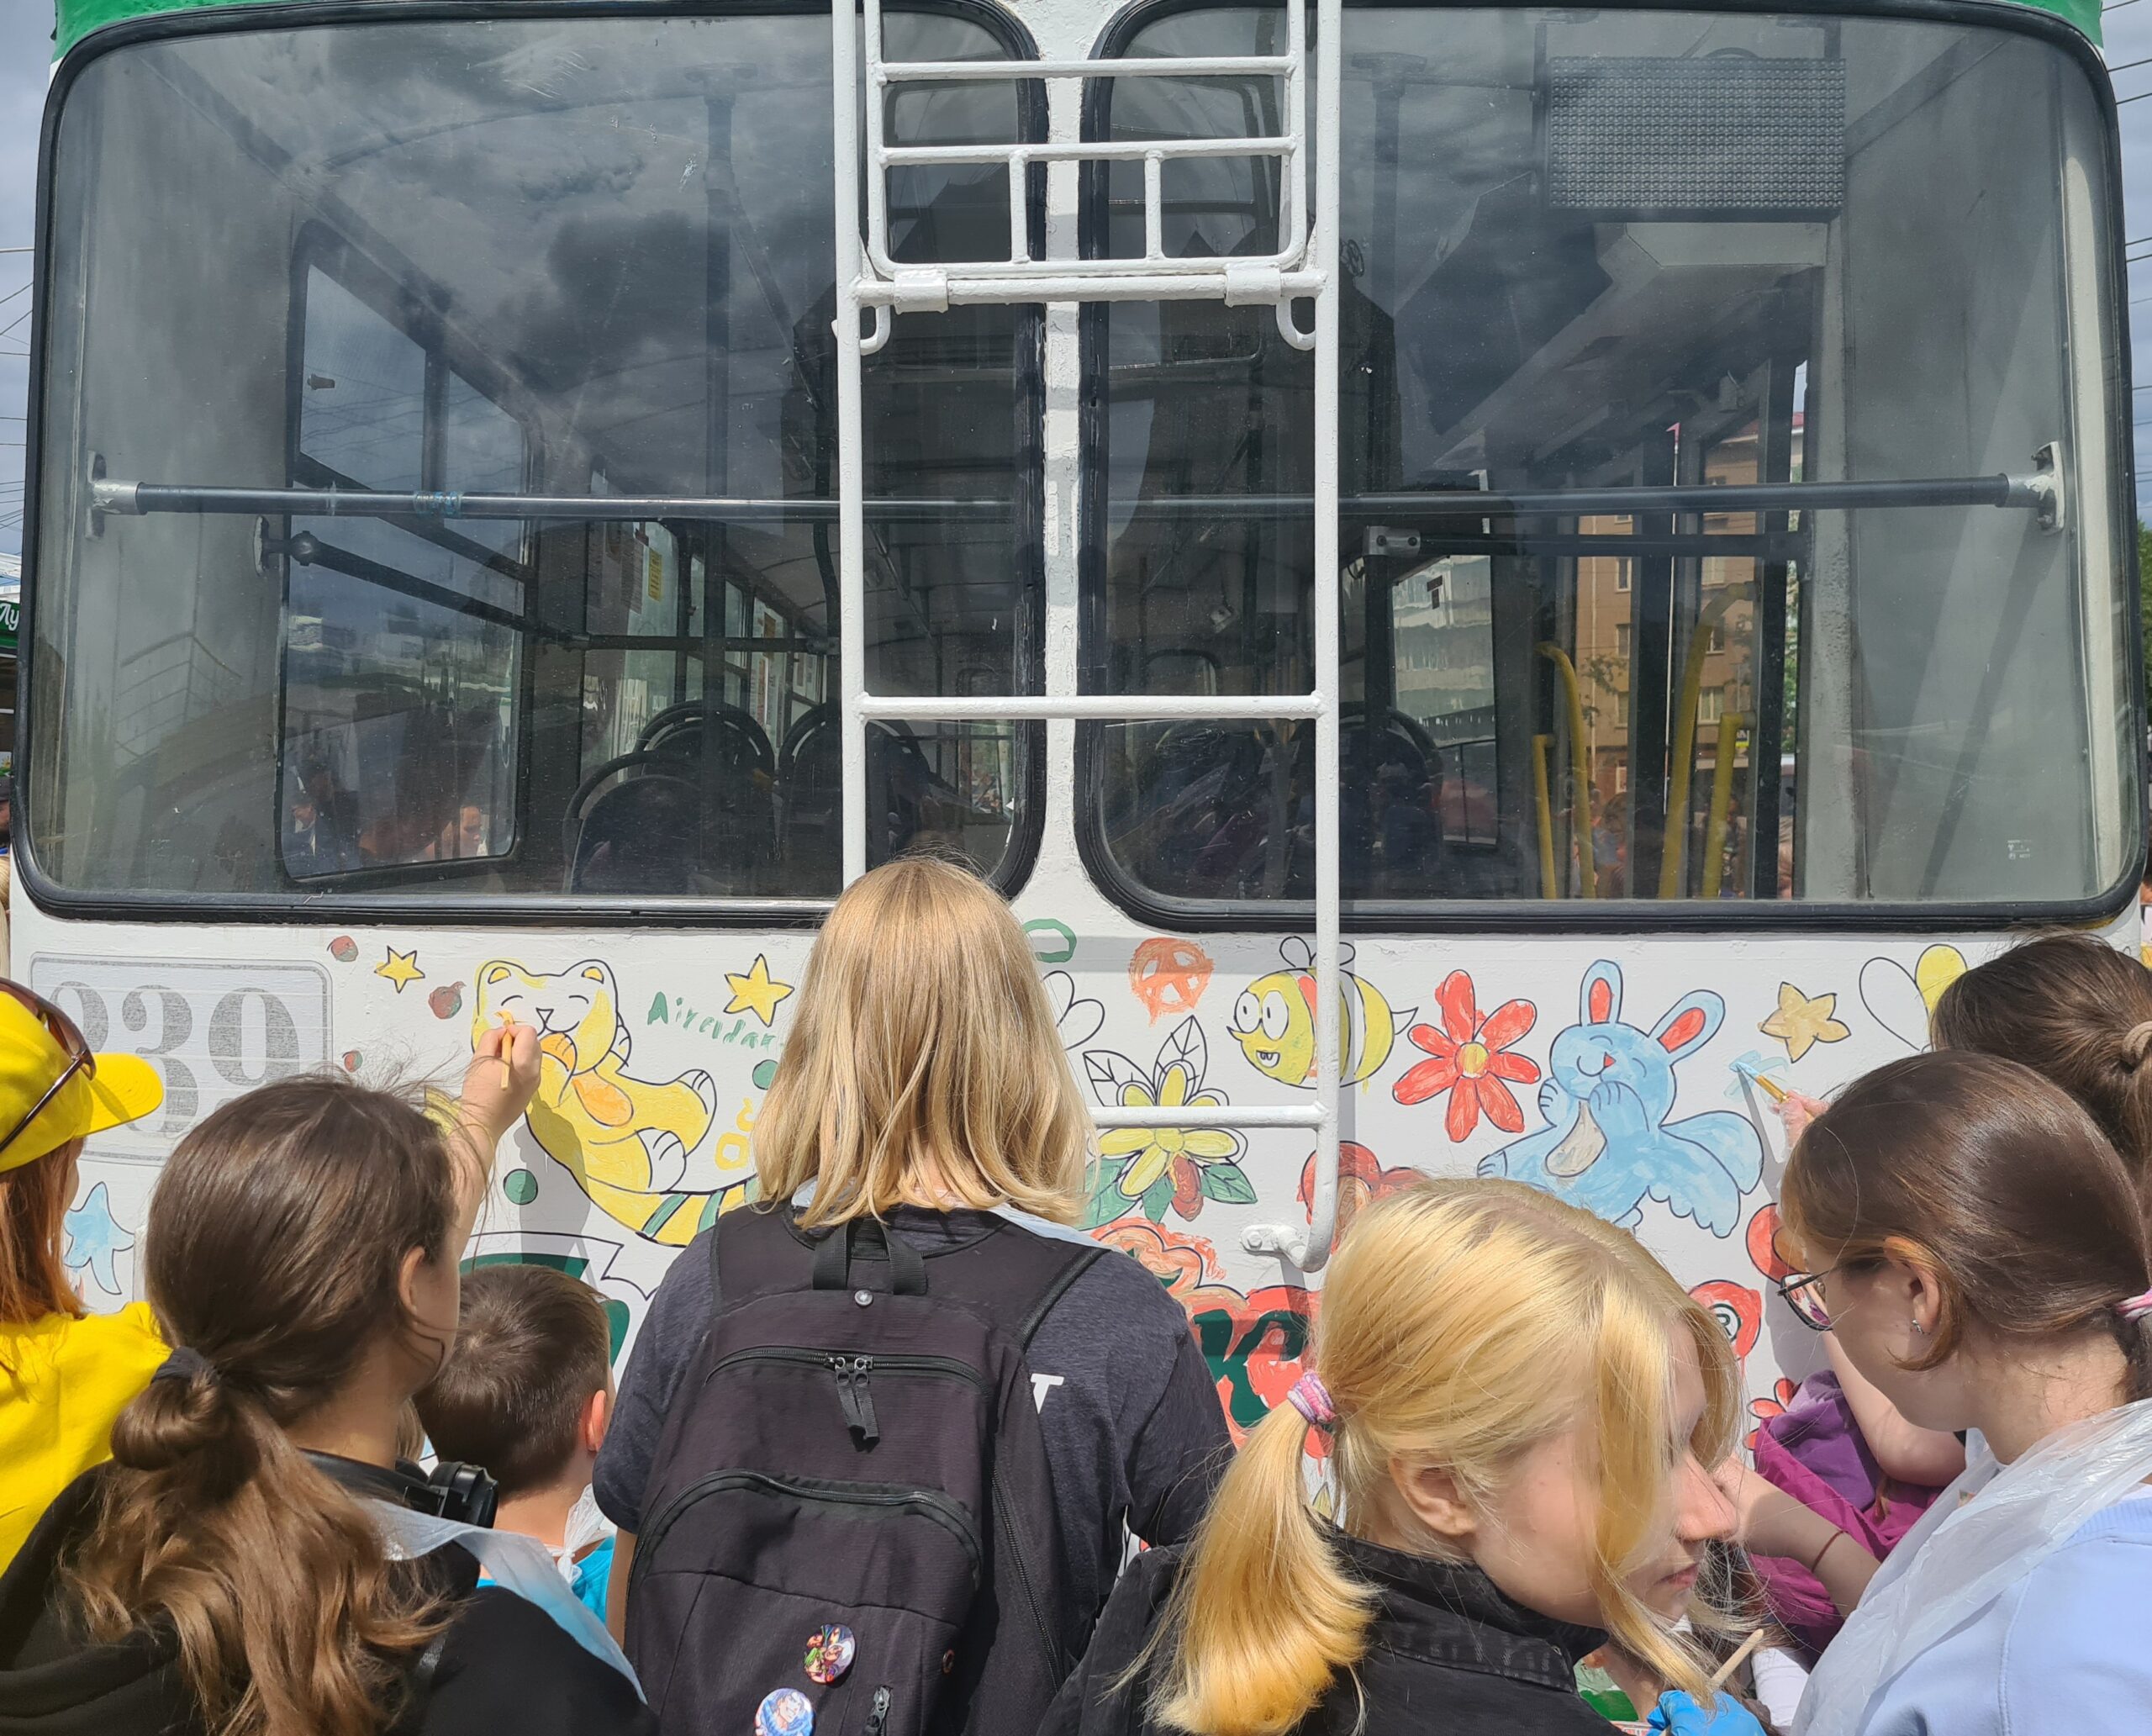 Read more about the article Облик троллейбусов глазами детей. На четыре Омских троллейбуса дети нанесли свои рисунки